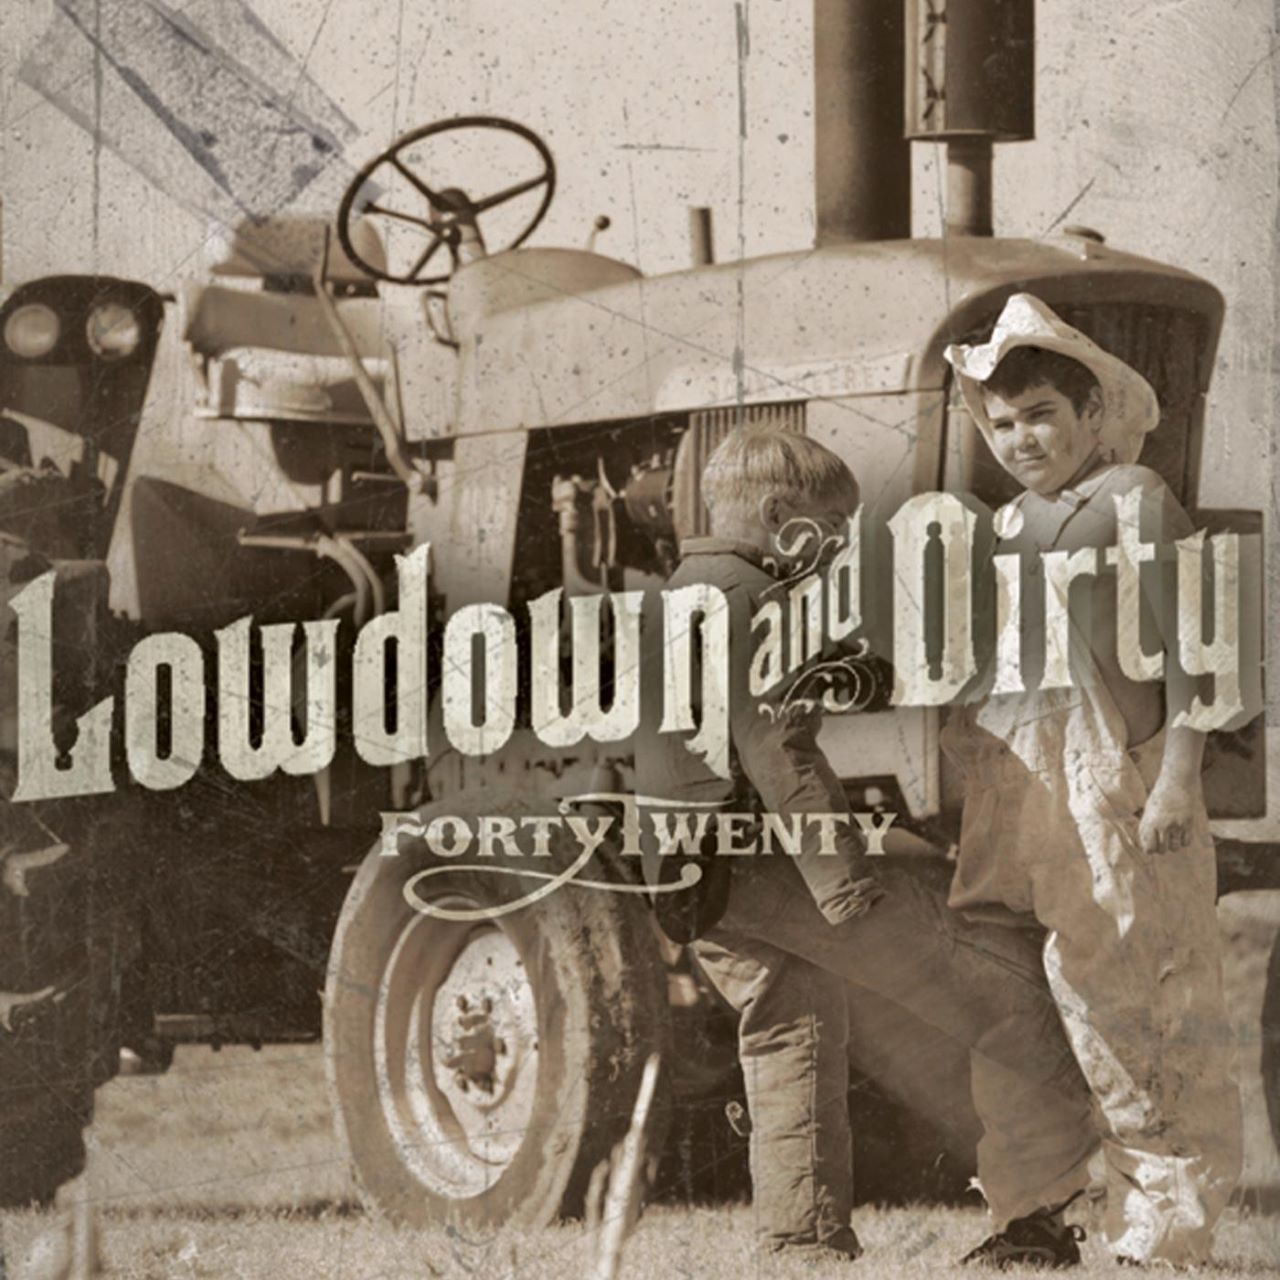 Fortytwenty - Lowdown & Dirty cover album